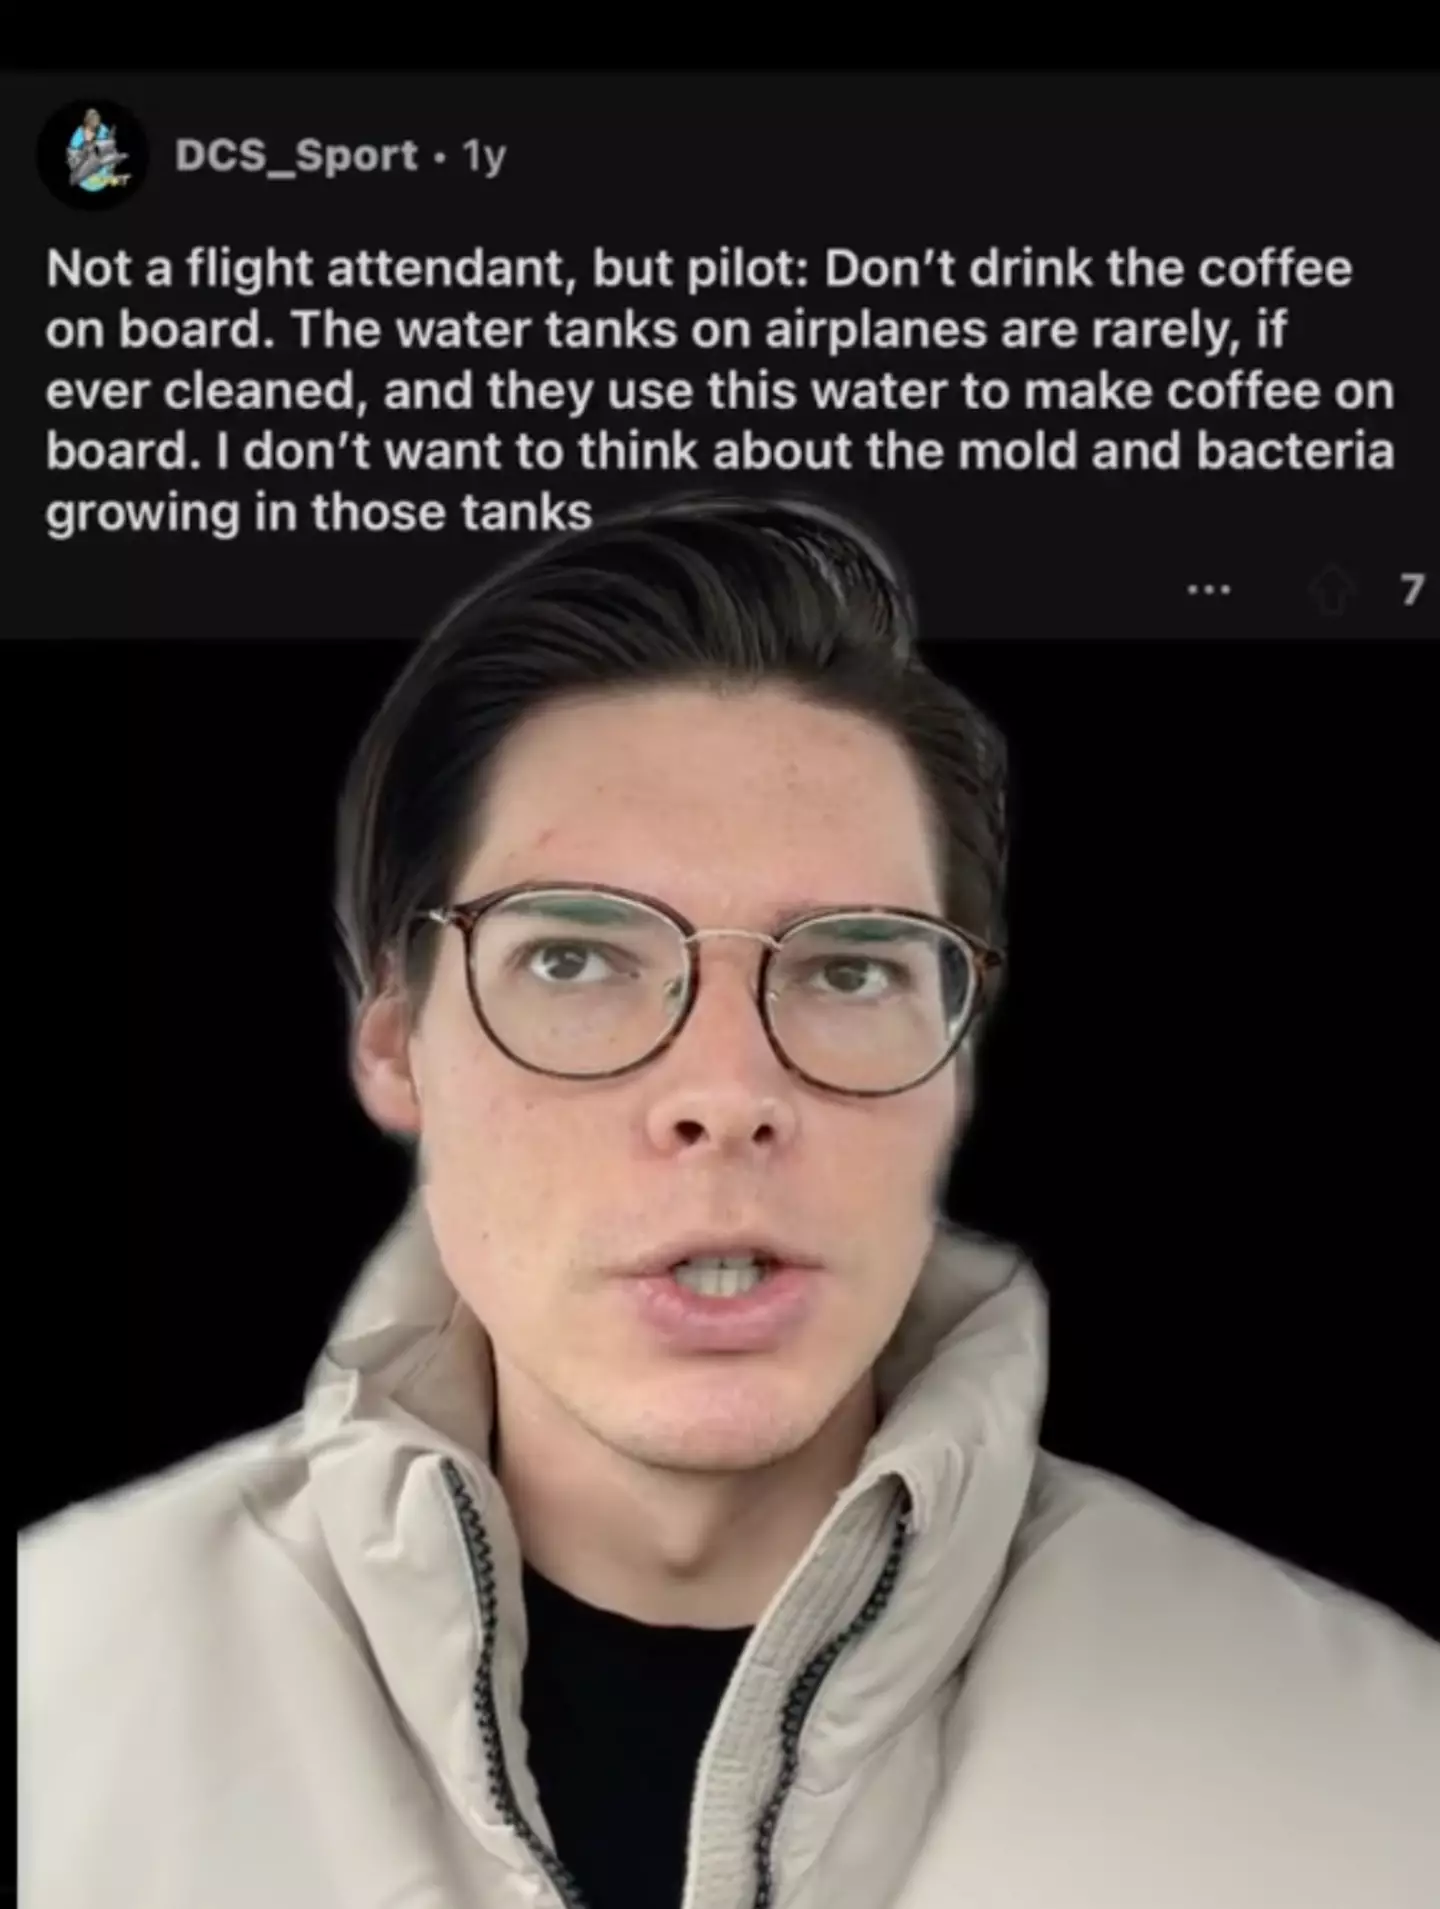 The flight attendant spoke about drinking coffee onboard a plane.